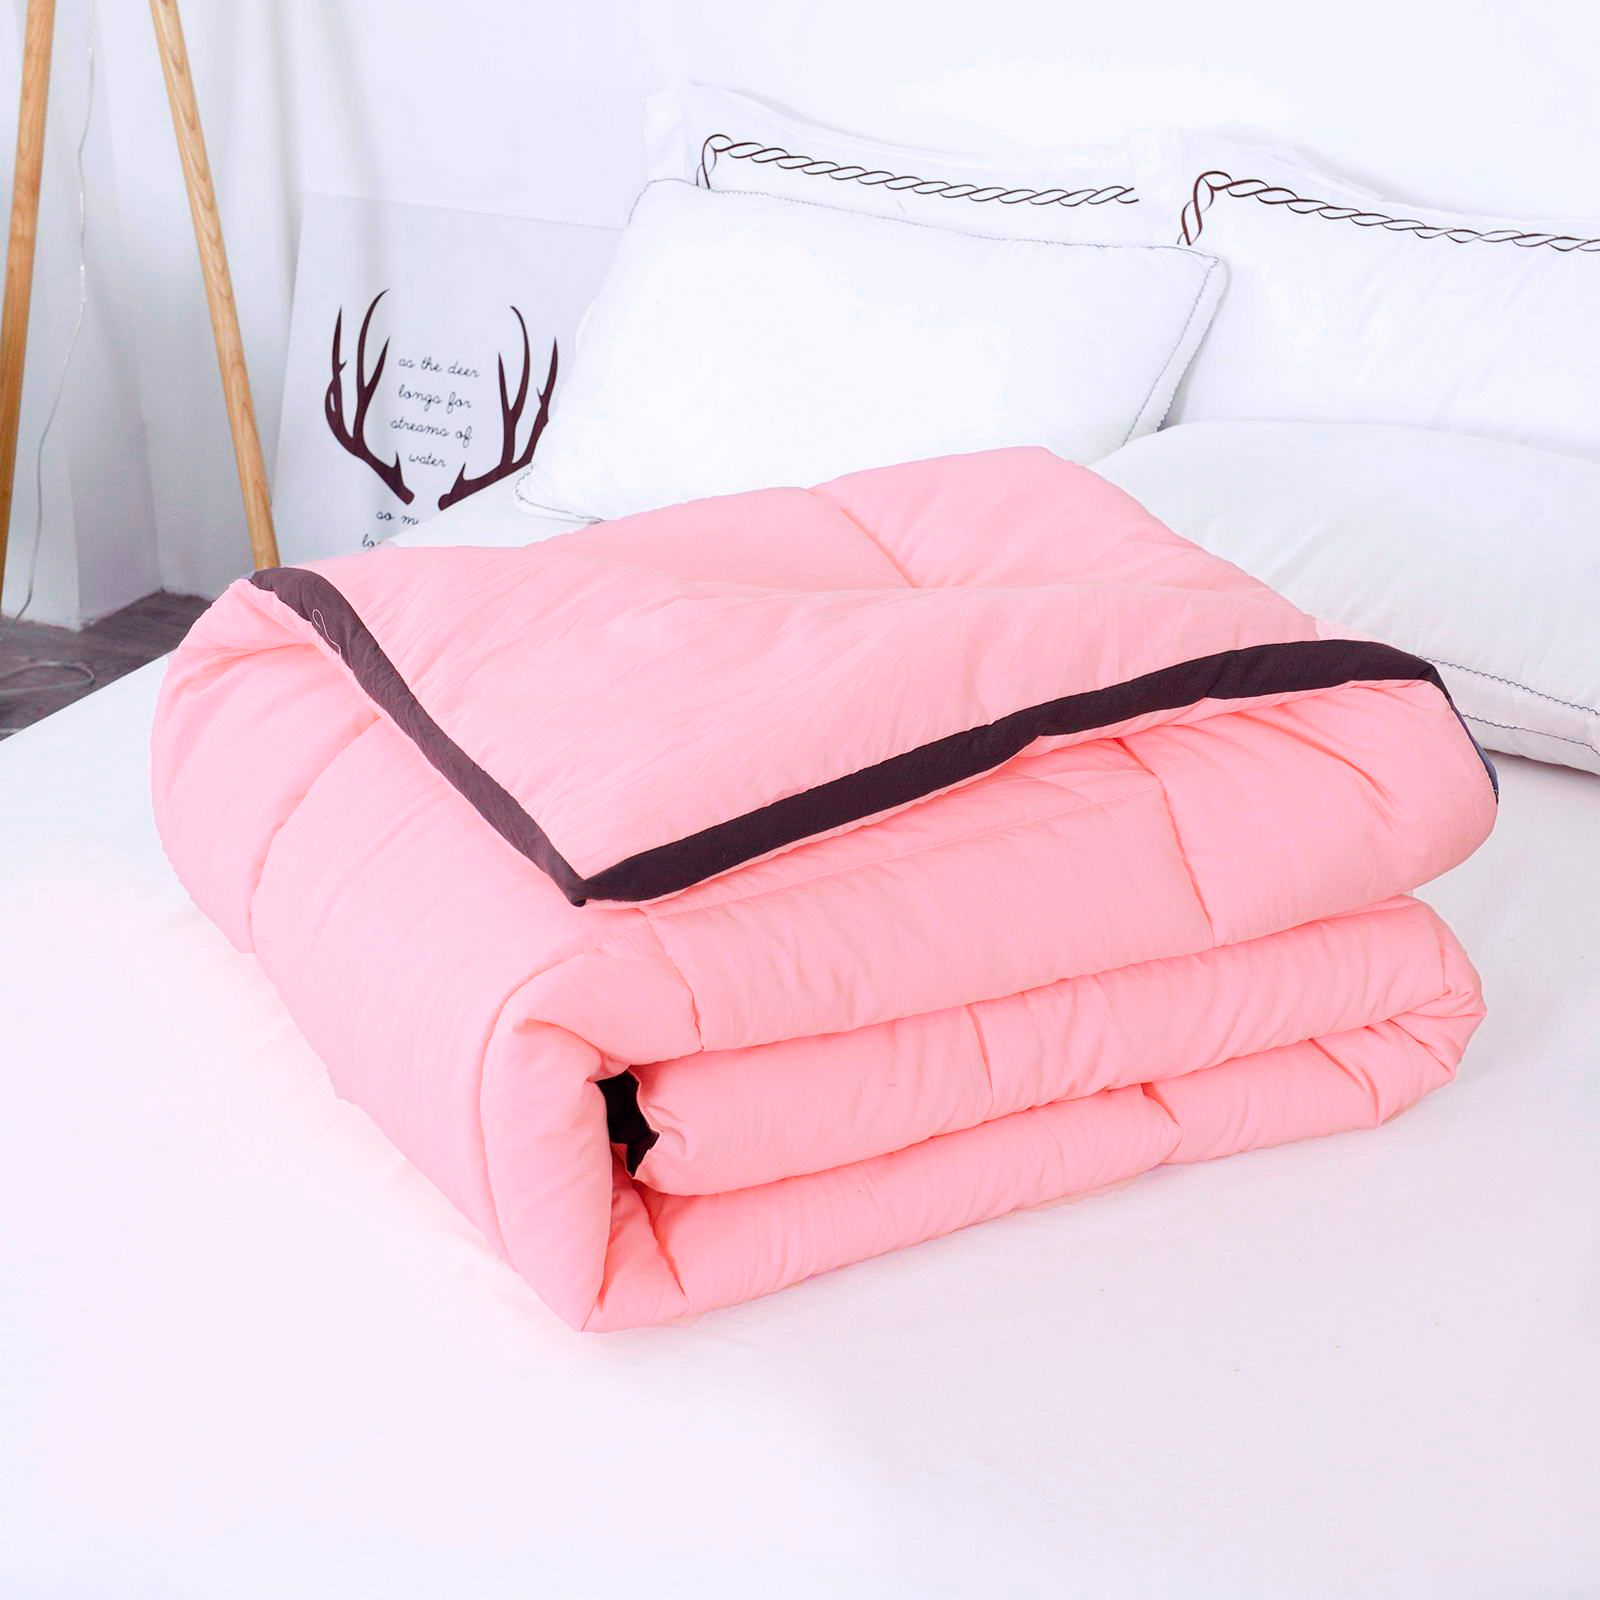 Одеяло Sofi De Marko Минерва персиковое 160х220 см, цвет персиковый - фото 1